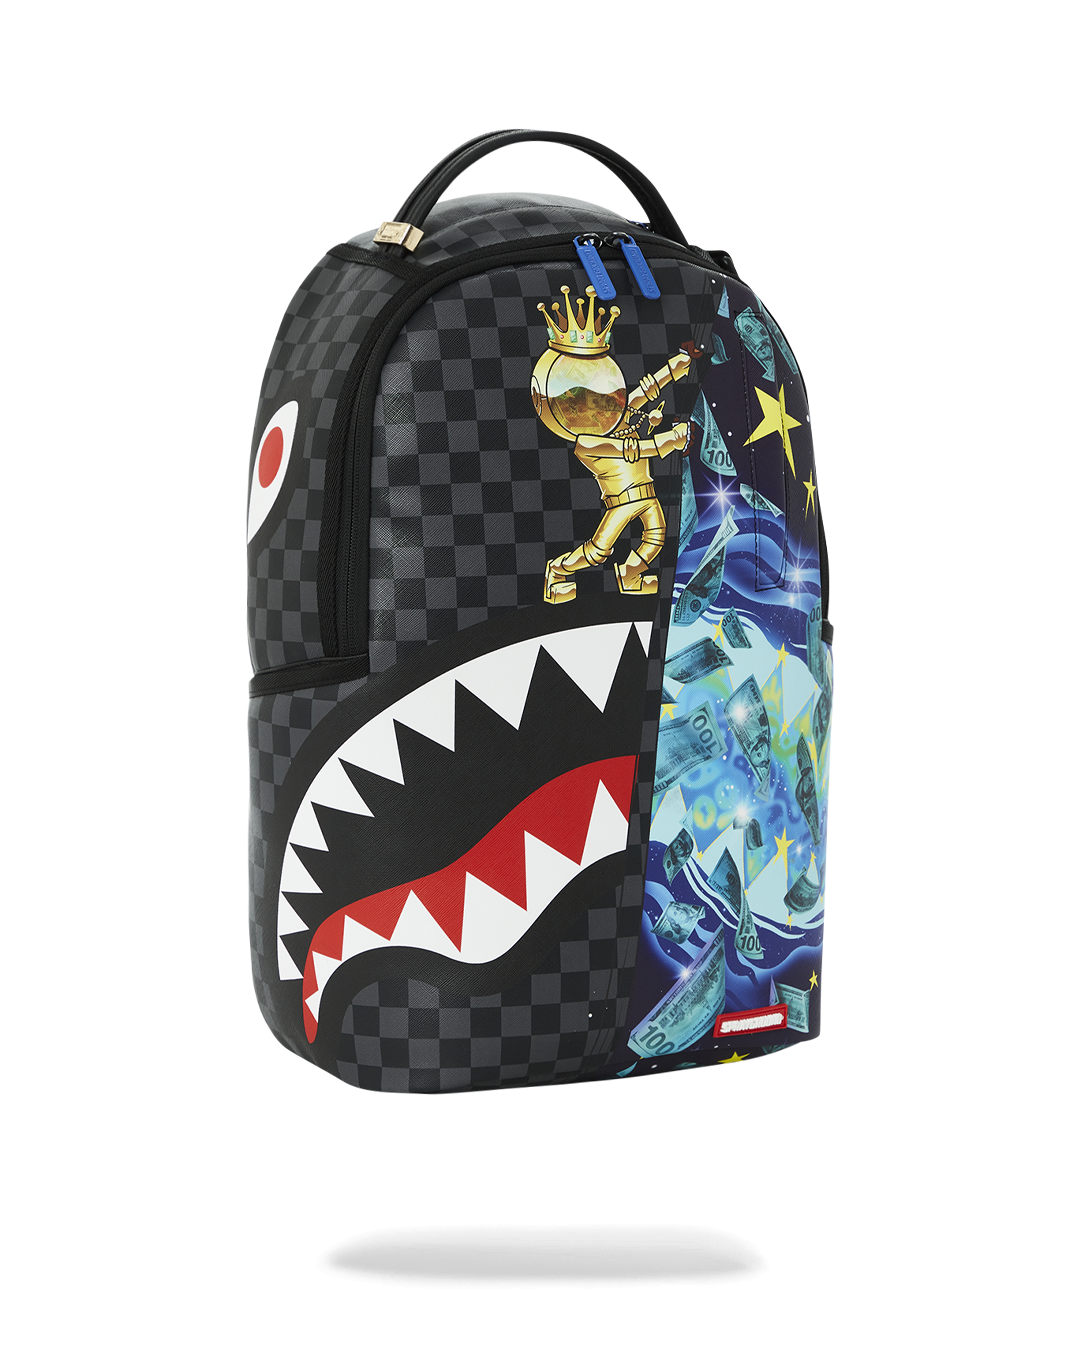 Bape Backpack, Black Pyramids Backpack, Waterproof Schoolbag for